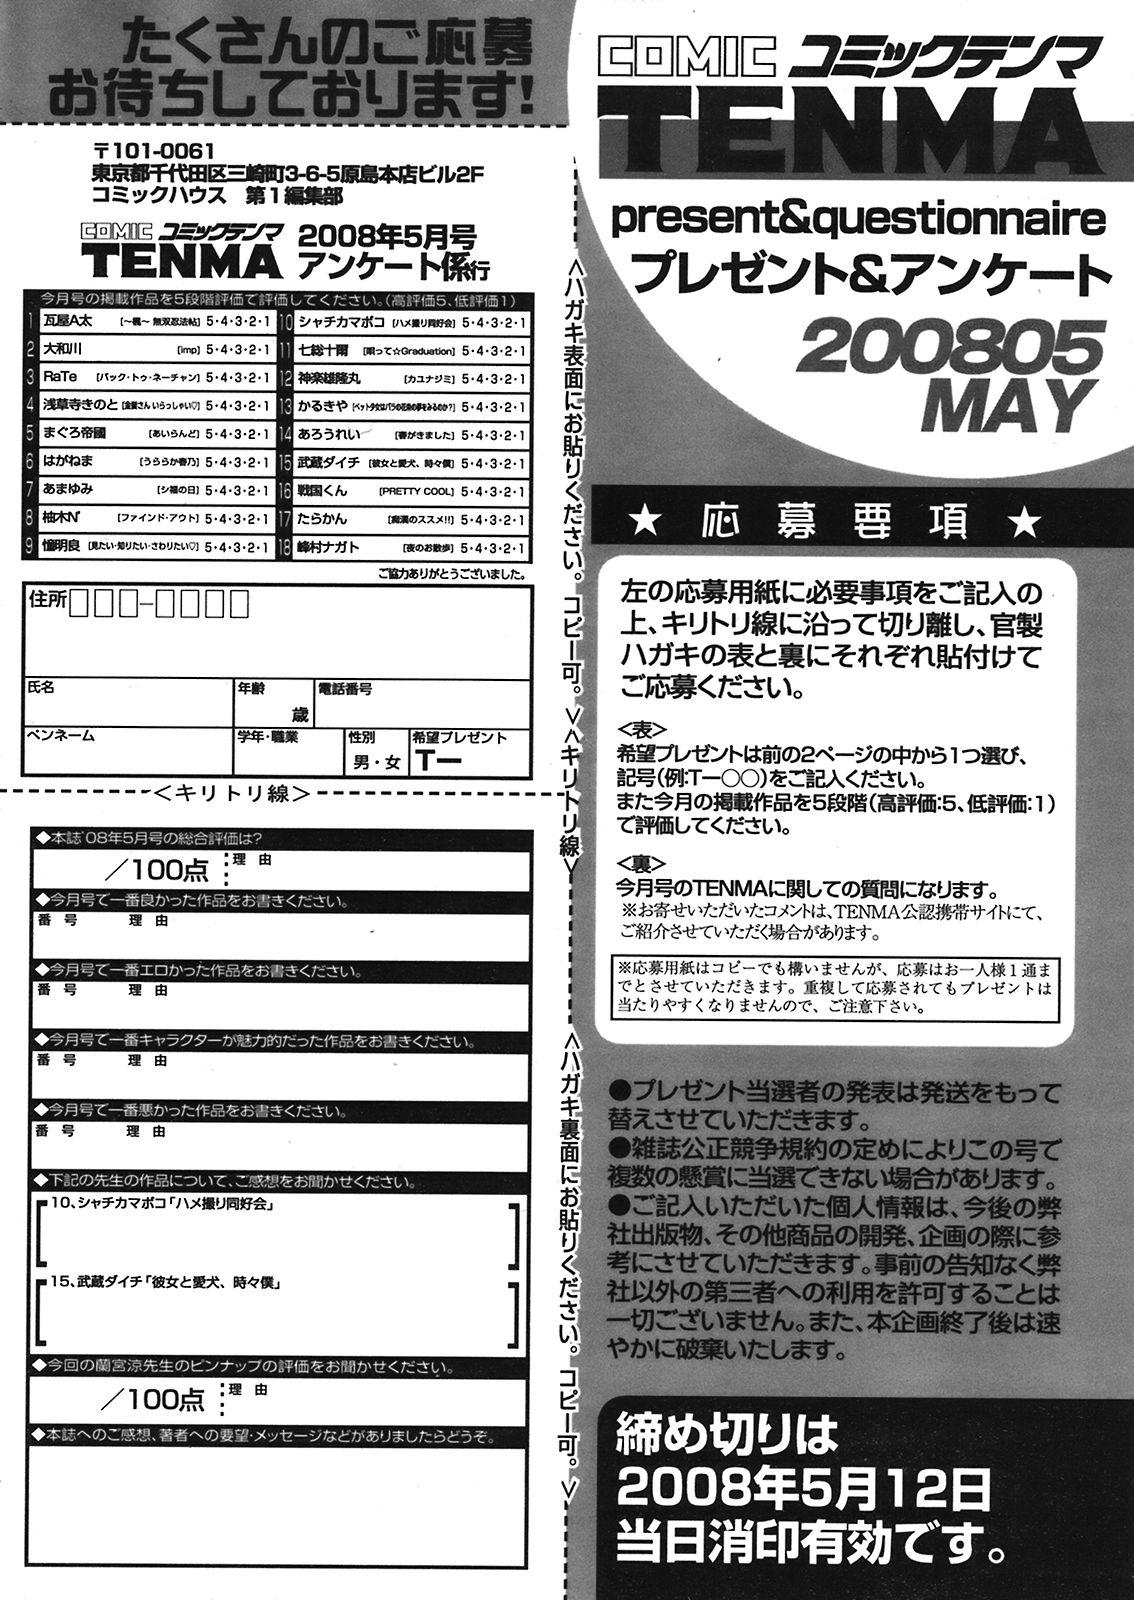 COMIC TENMA 2008-05 435